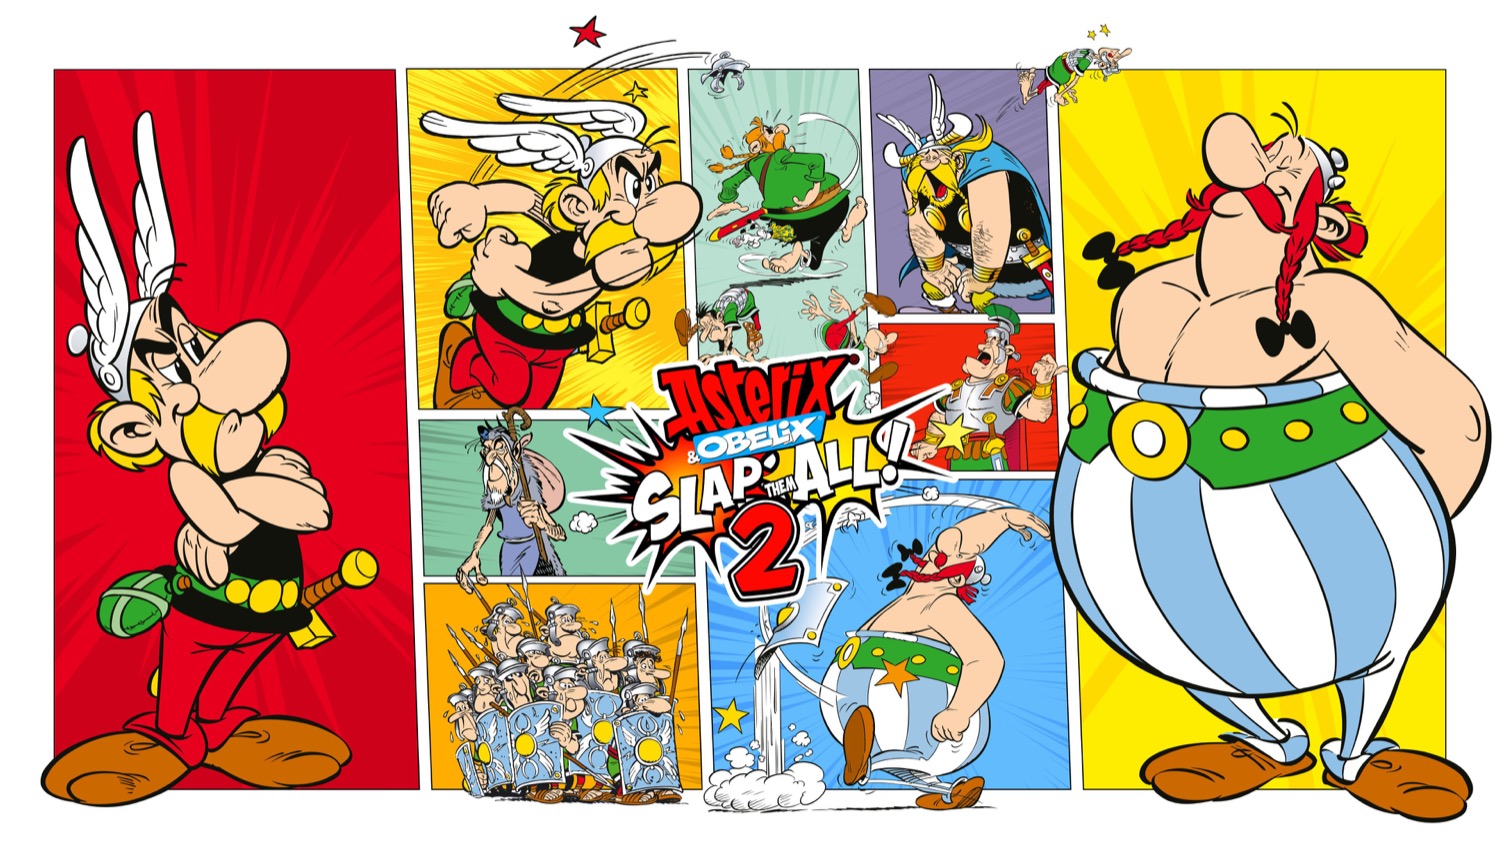 Показали первый геймплей битемапа Asterix & Obelix Slap Them All! 2: с сайта NEWXBOXONE.RU